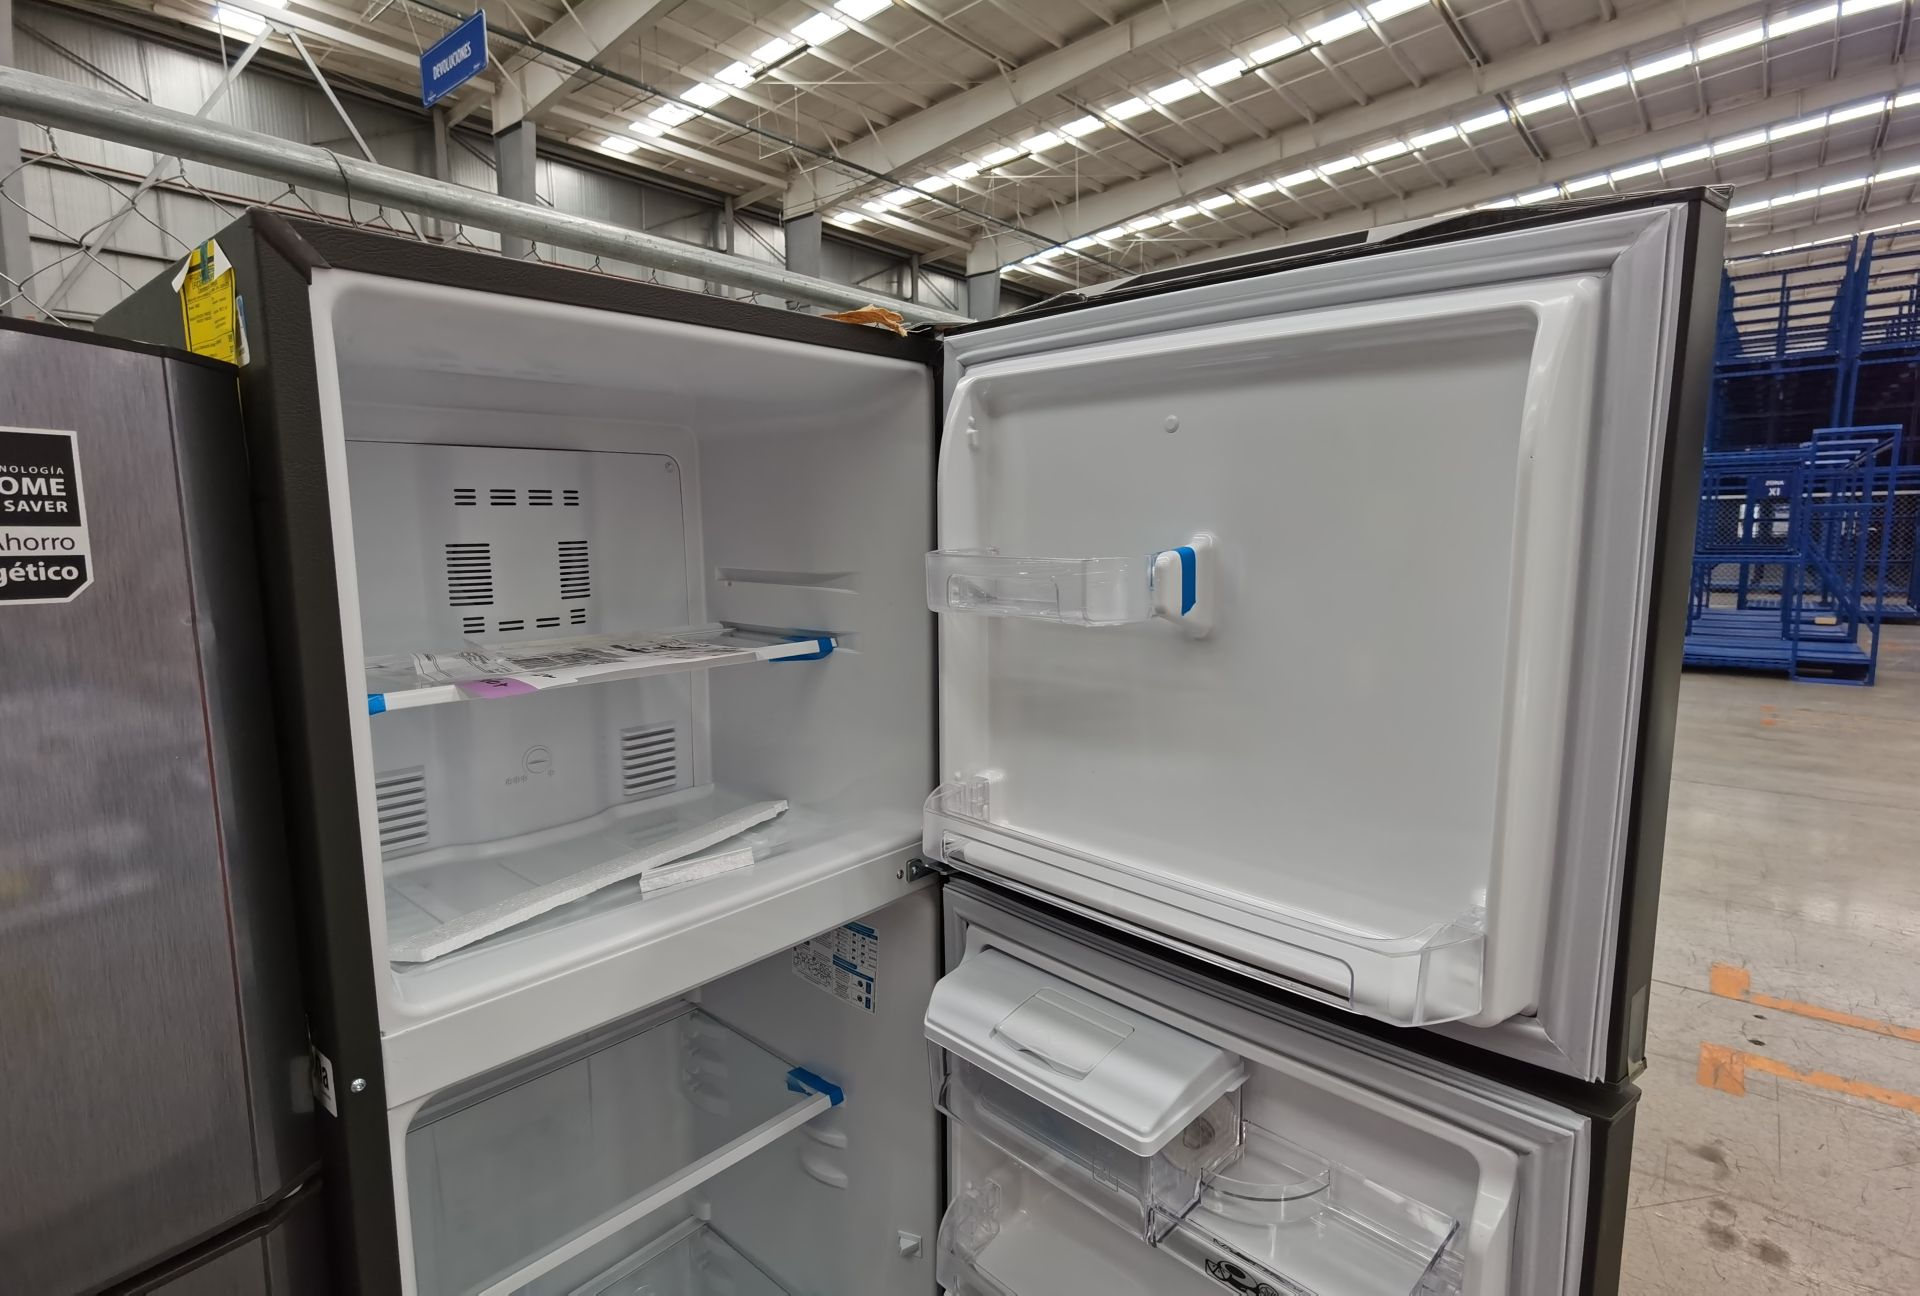 1 Refrigerador Marca Mabe, Modelo RMA300FJMR, Serie 2206B715895, Color Gris - Image 4 of 6